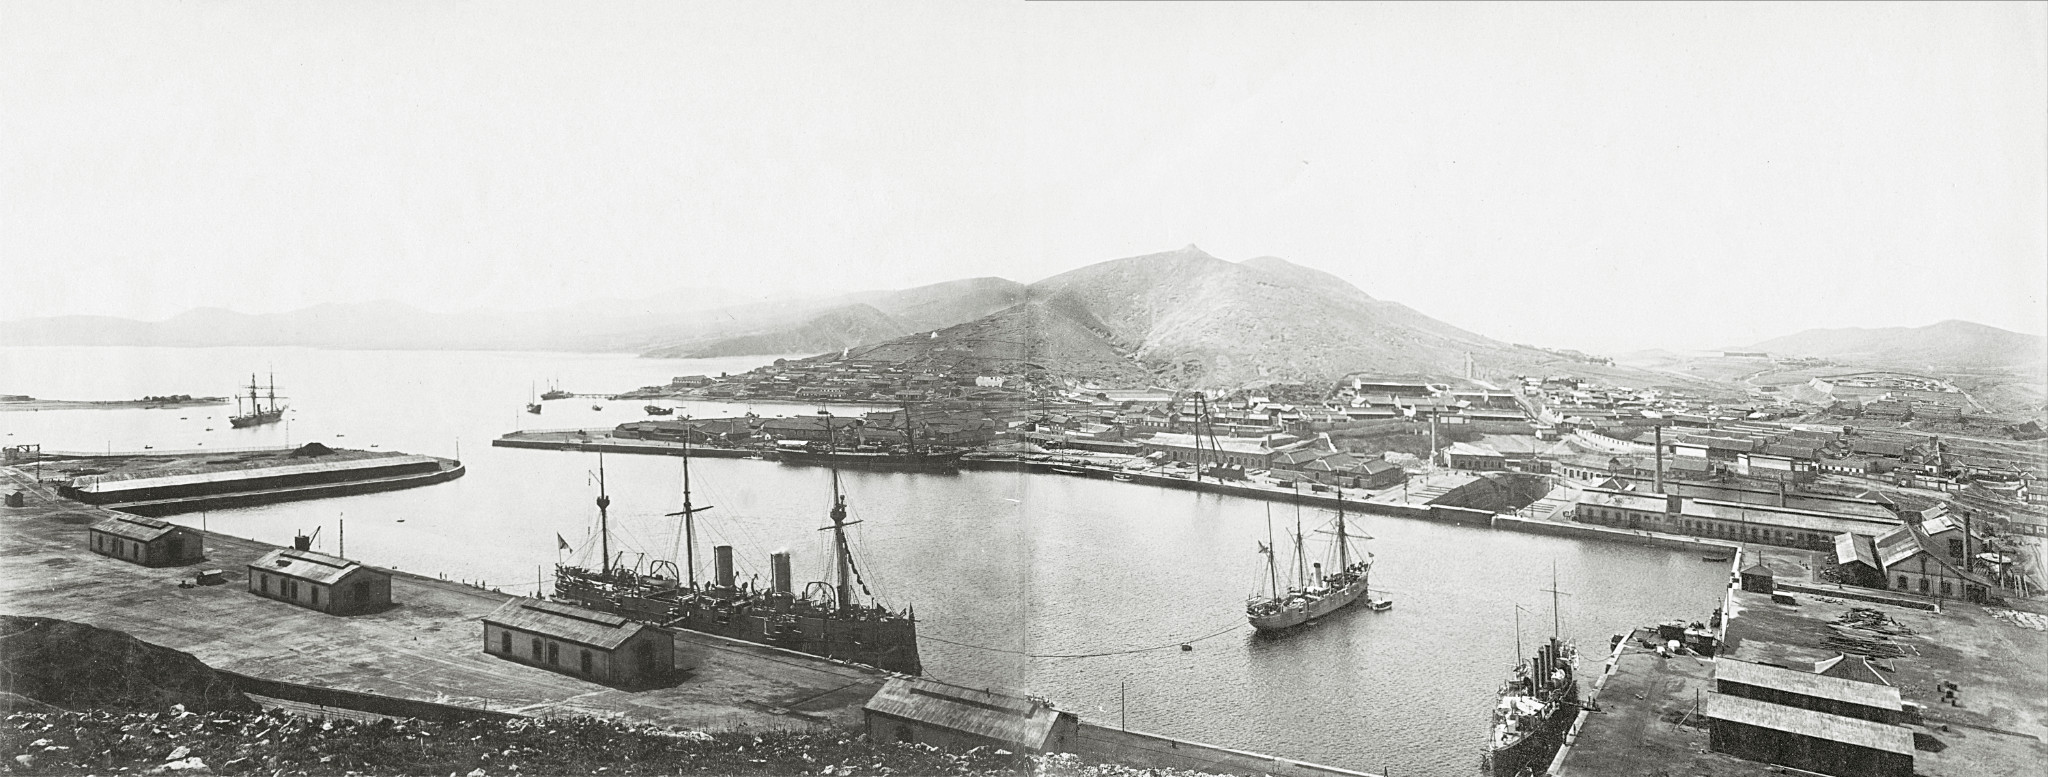 W Port Arturze 1898 rok (zaraz po zajęciu portu)